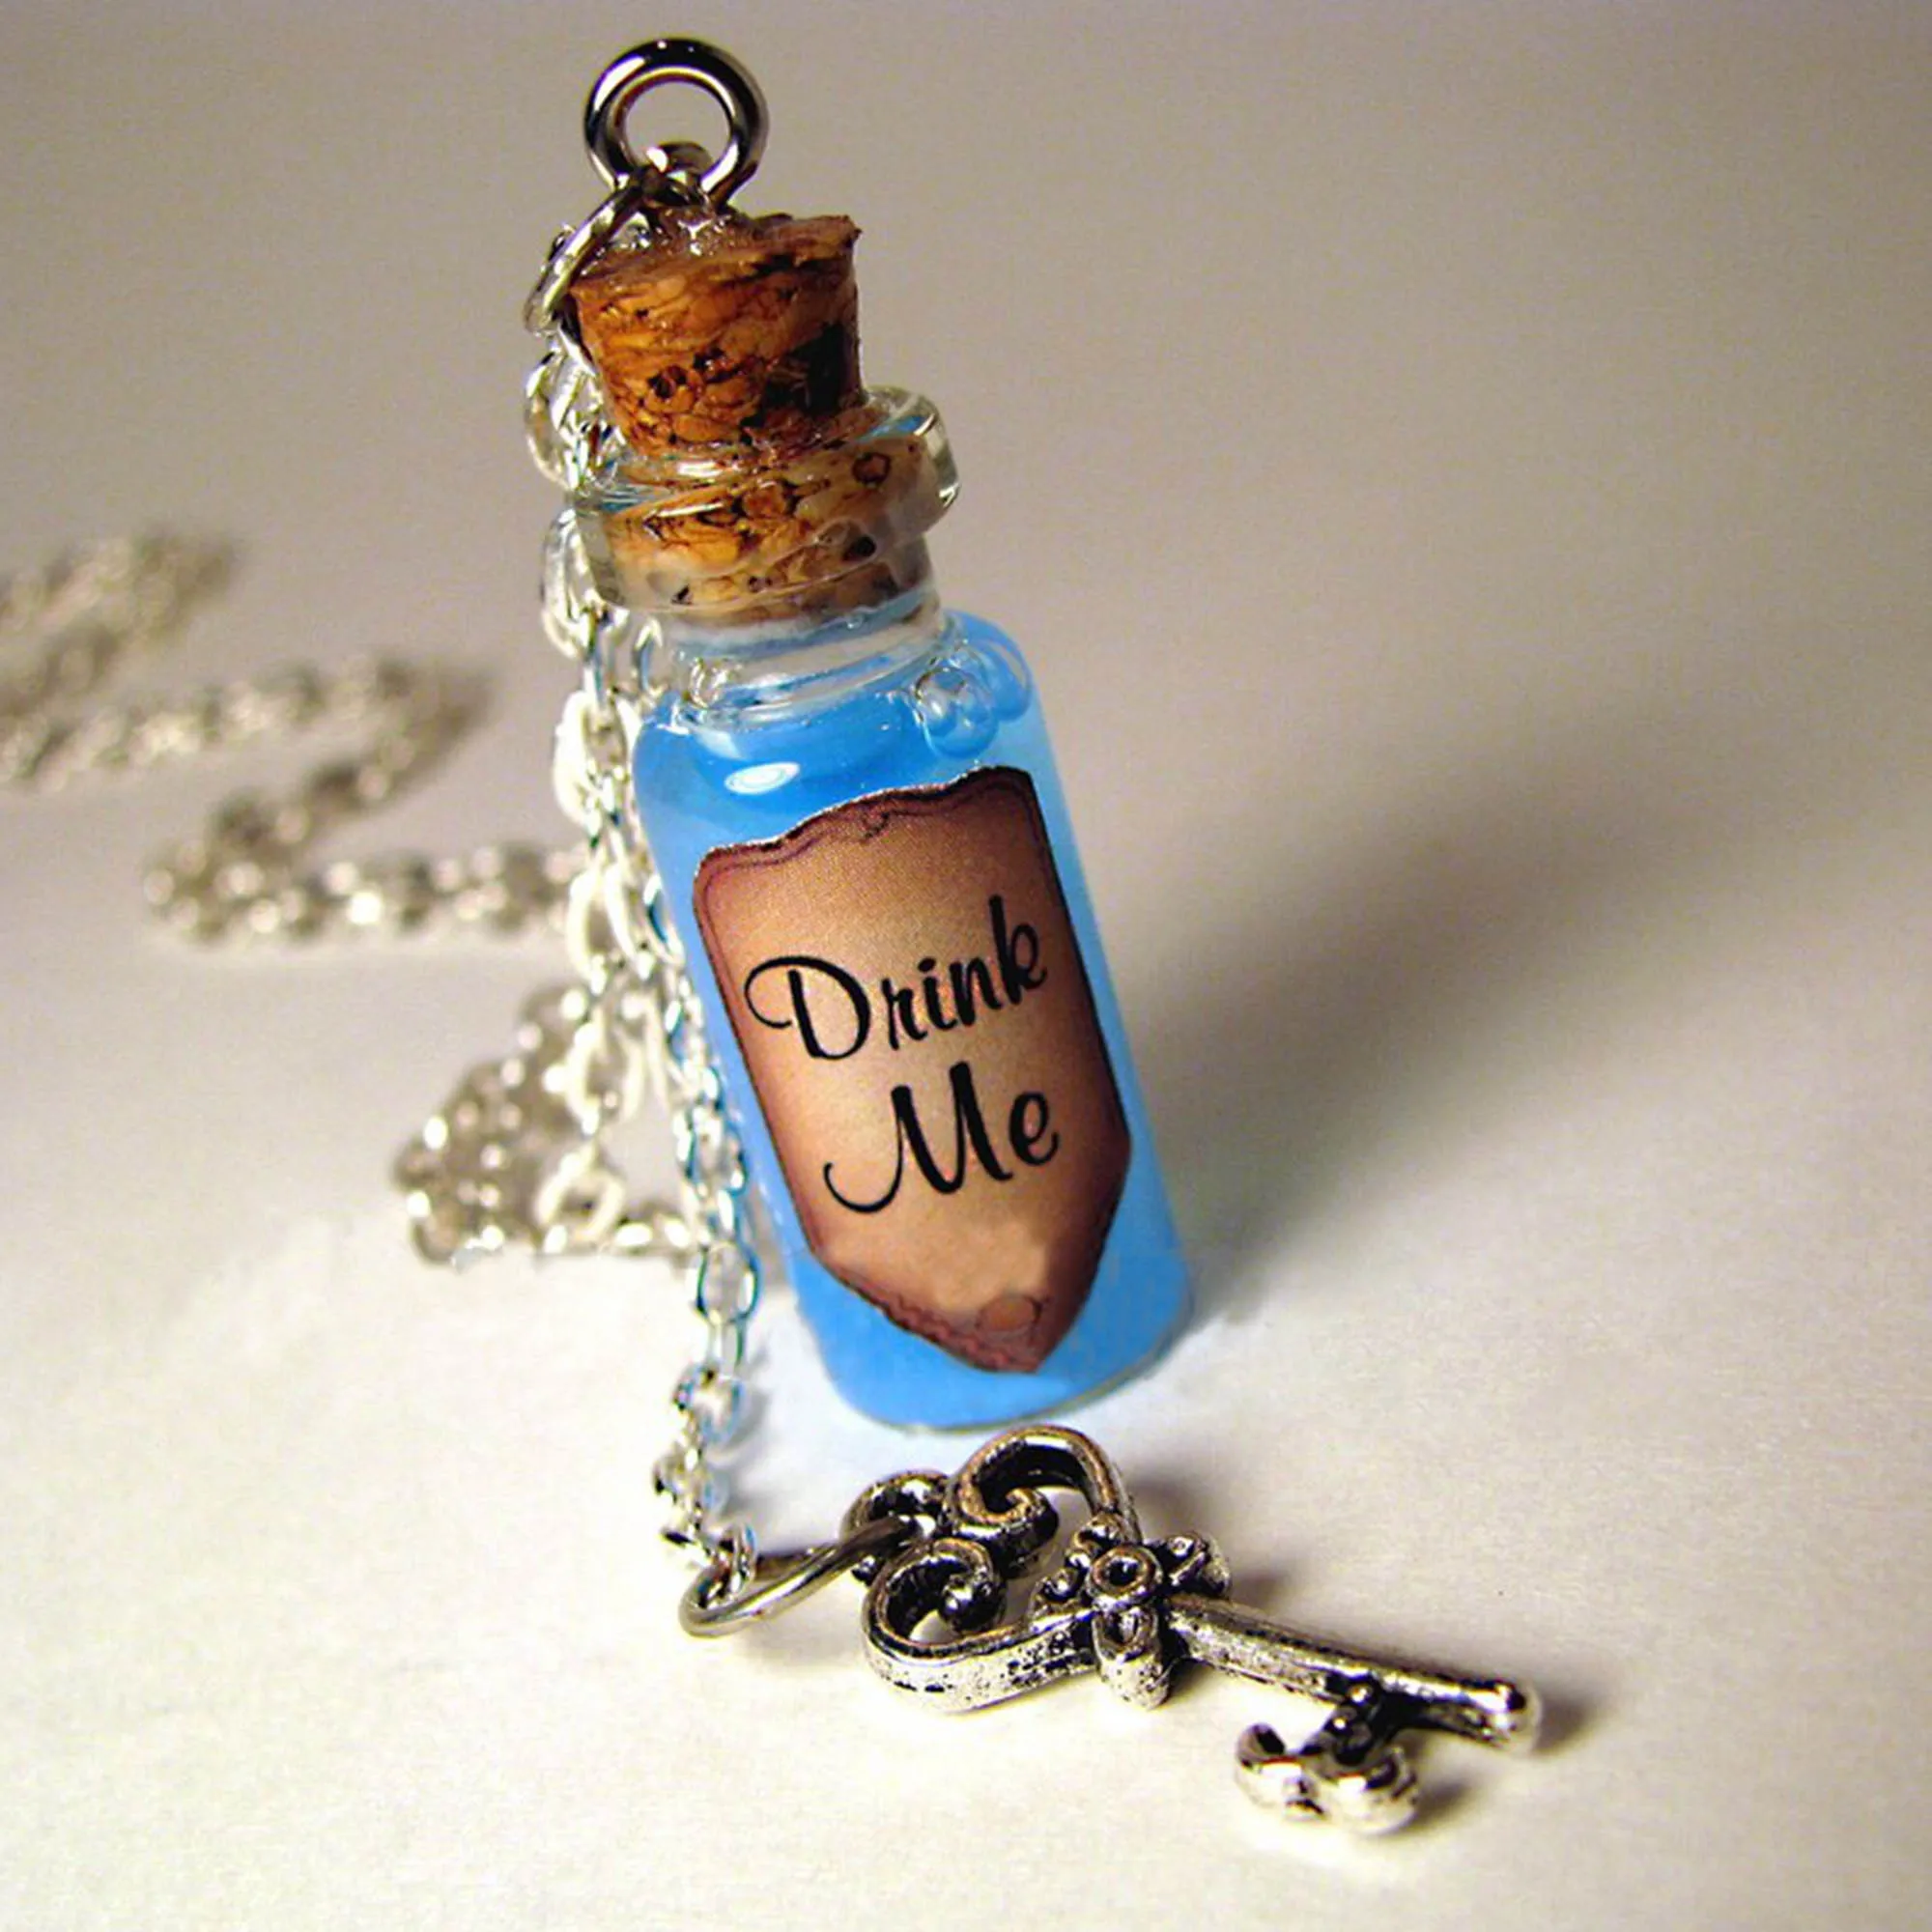 https://ae01.alicdn.com/kf/S66885fe445b44f77a40d15a9e9ffb235O/Drink-Me-Bottle-Necklace-Alice-s-Adventures-in-Wonderland-Drink-Me-Blue-Shimmer-Liquid-with-Key.jpg